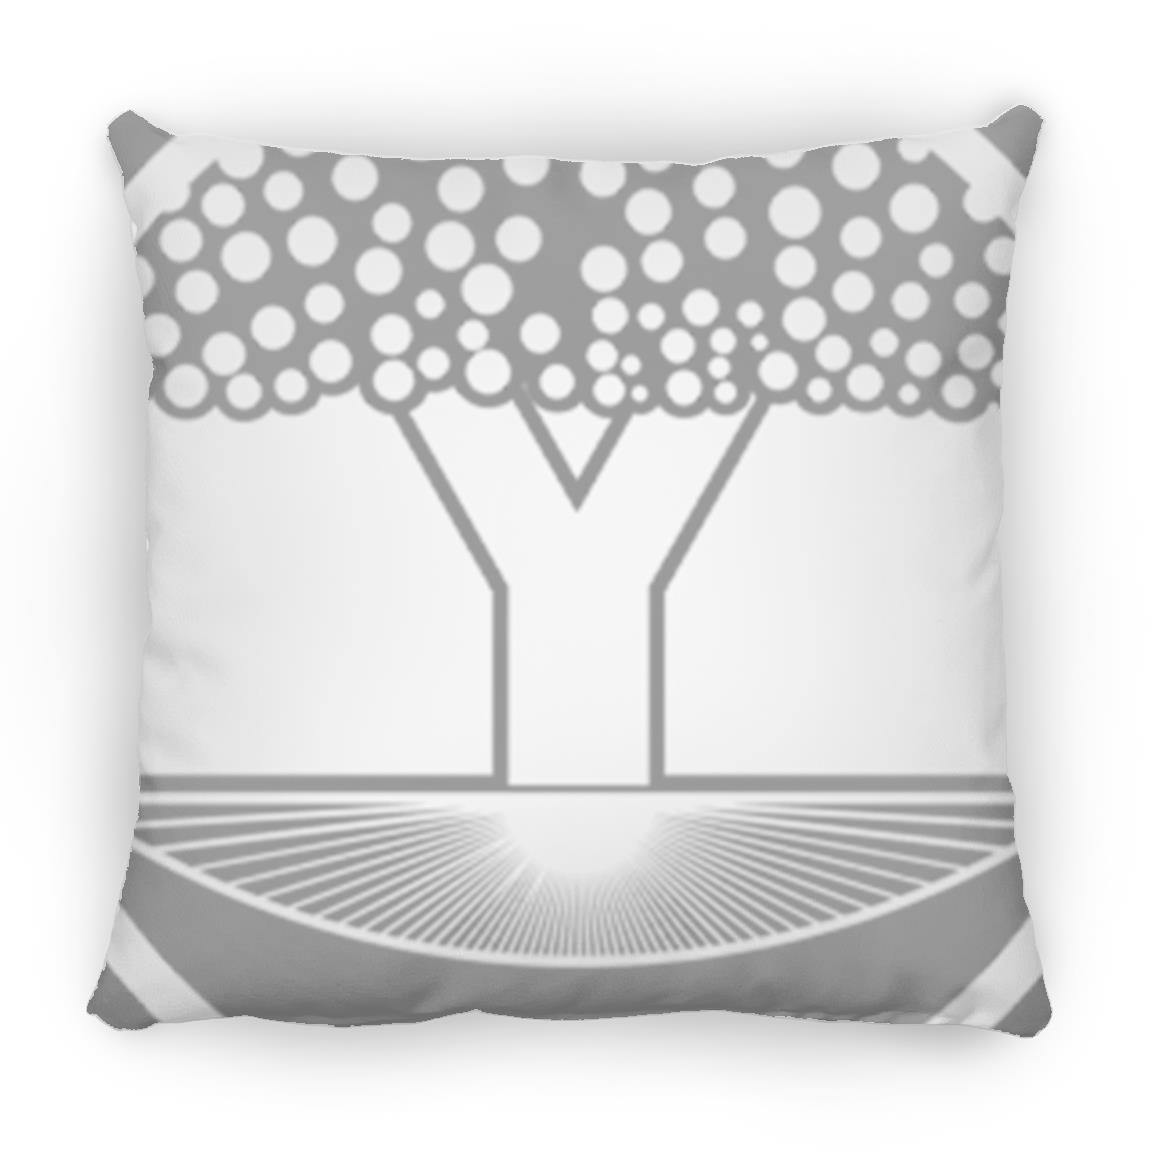 Crop Circle Pillow - Alton Barnes 3 - Shapes of Wisdom